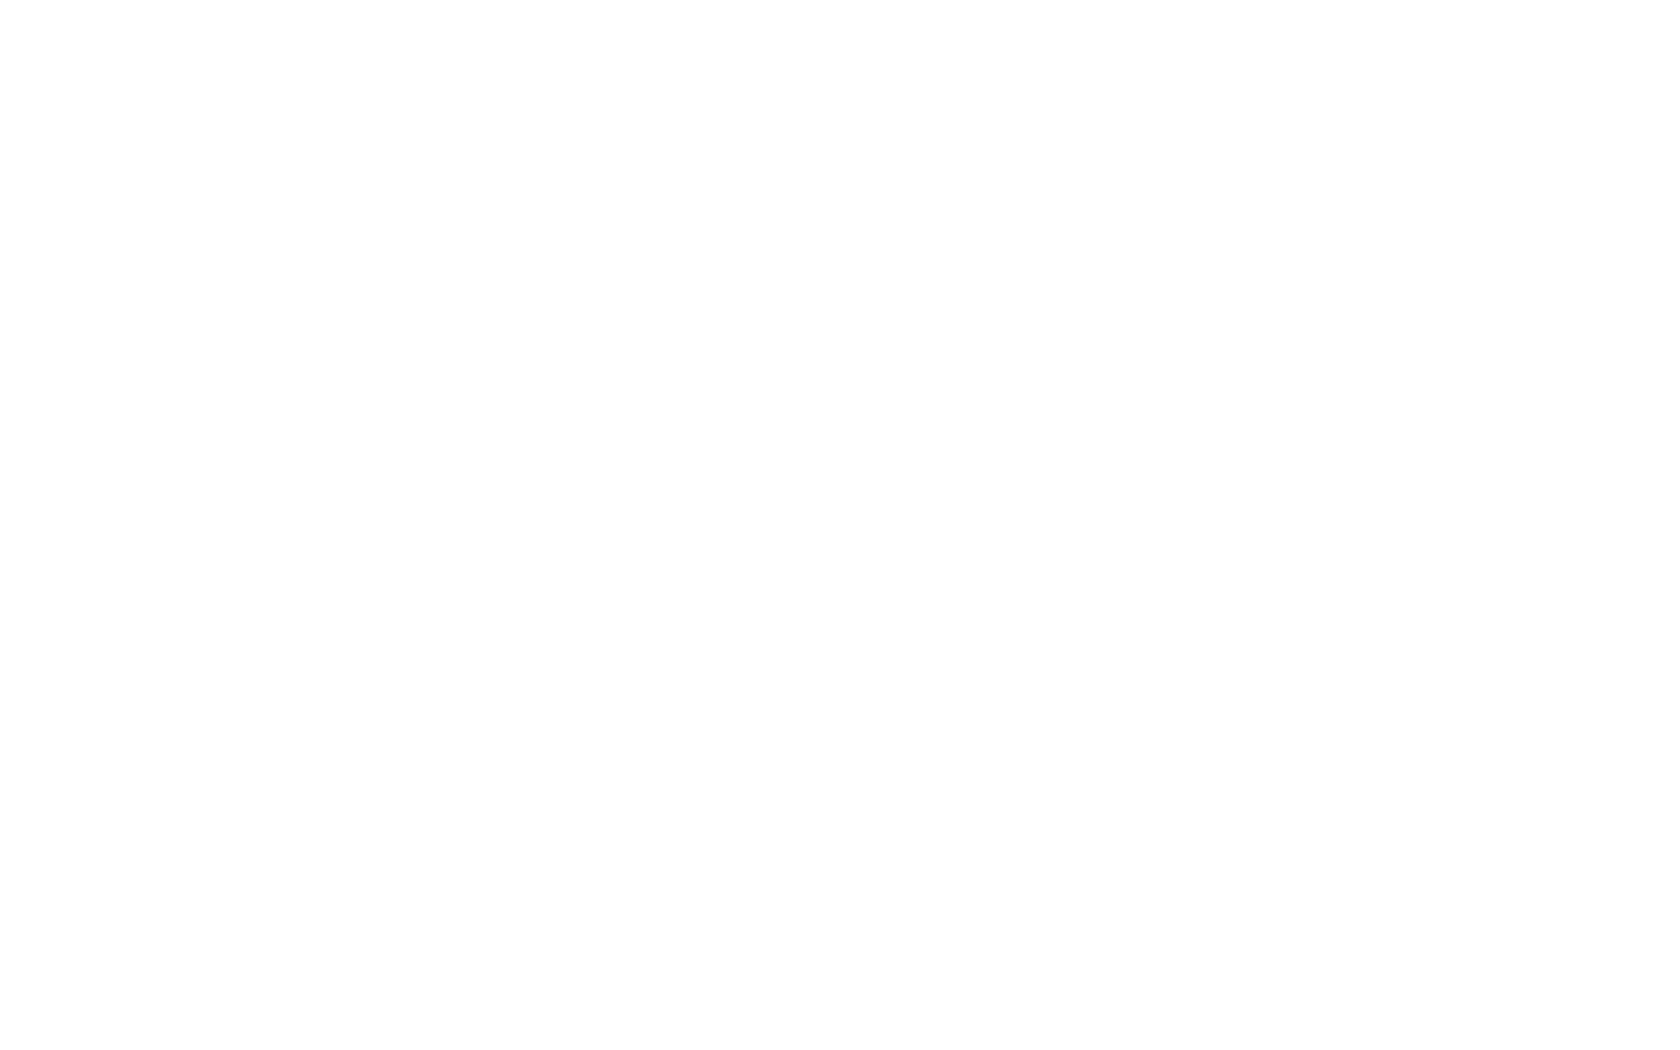 Дизайн логотипа и этикетки рыбных пресервов Рыбный Четверг. Брендинговое агентство Force Gear.